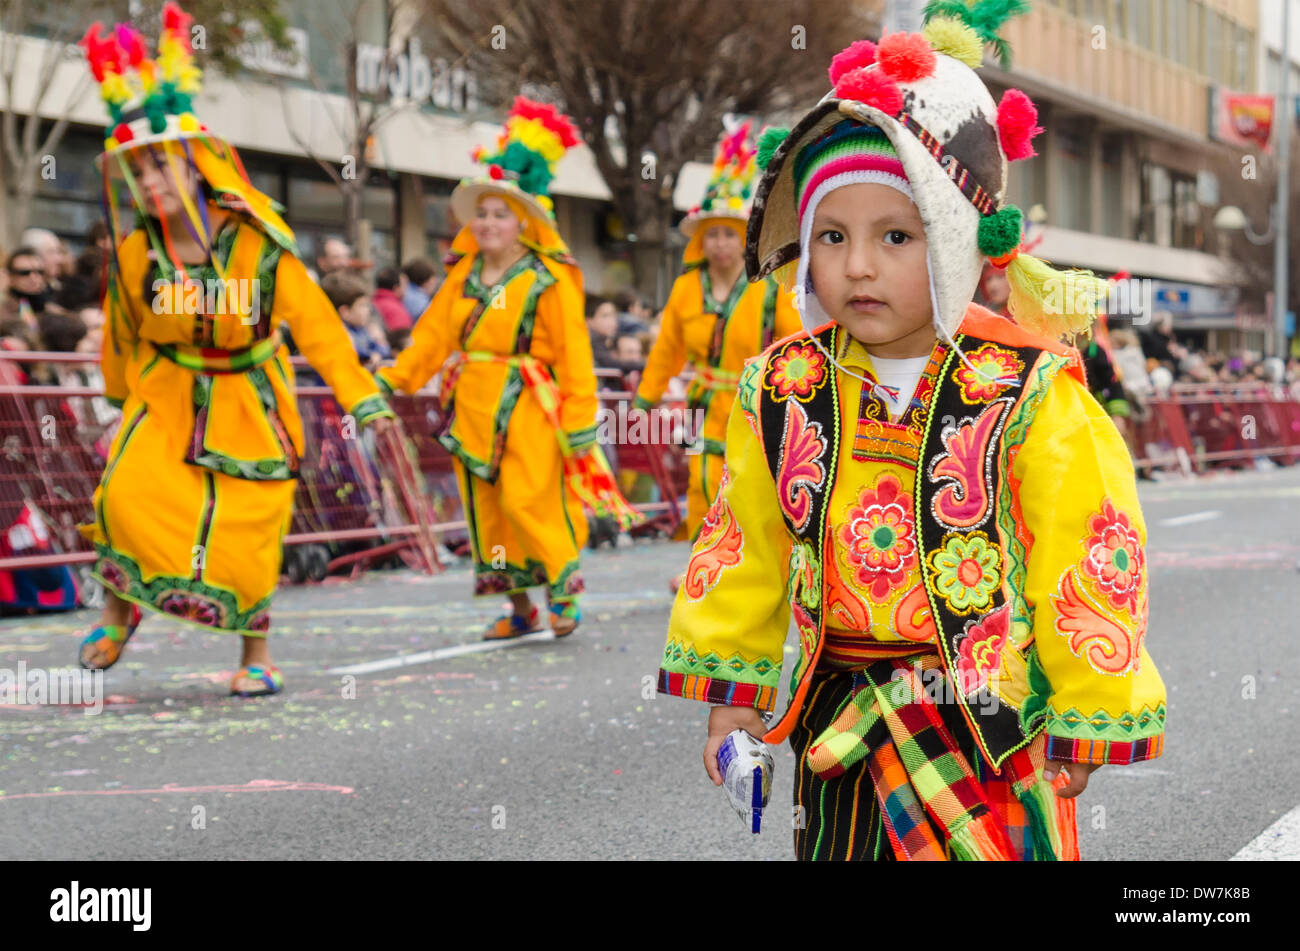 Cadix, Espagne. 2 mars 2014. Enfant habillé en vêtements péruviens typiques pendant le défilé du carnaval de Cadix. Carnaval de Cadix - Dimanche 2 Mars Banque D'Images